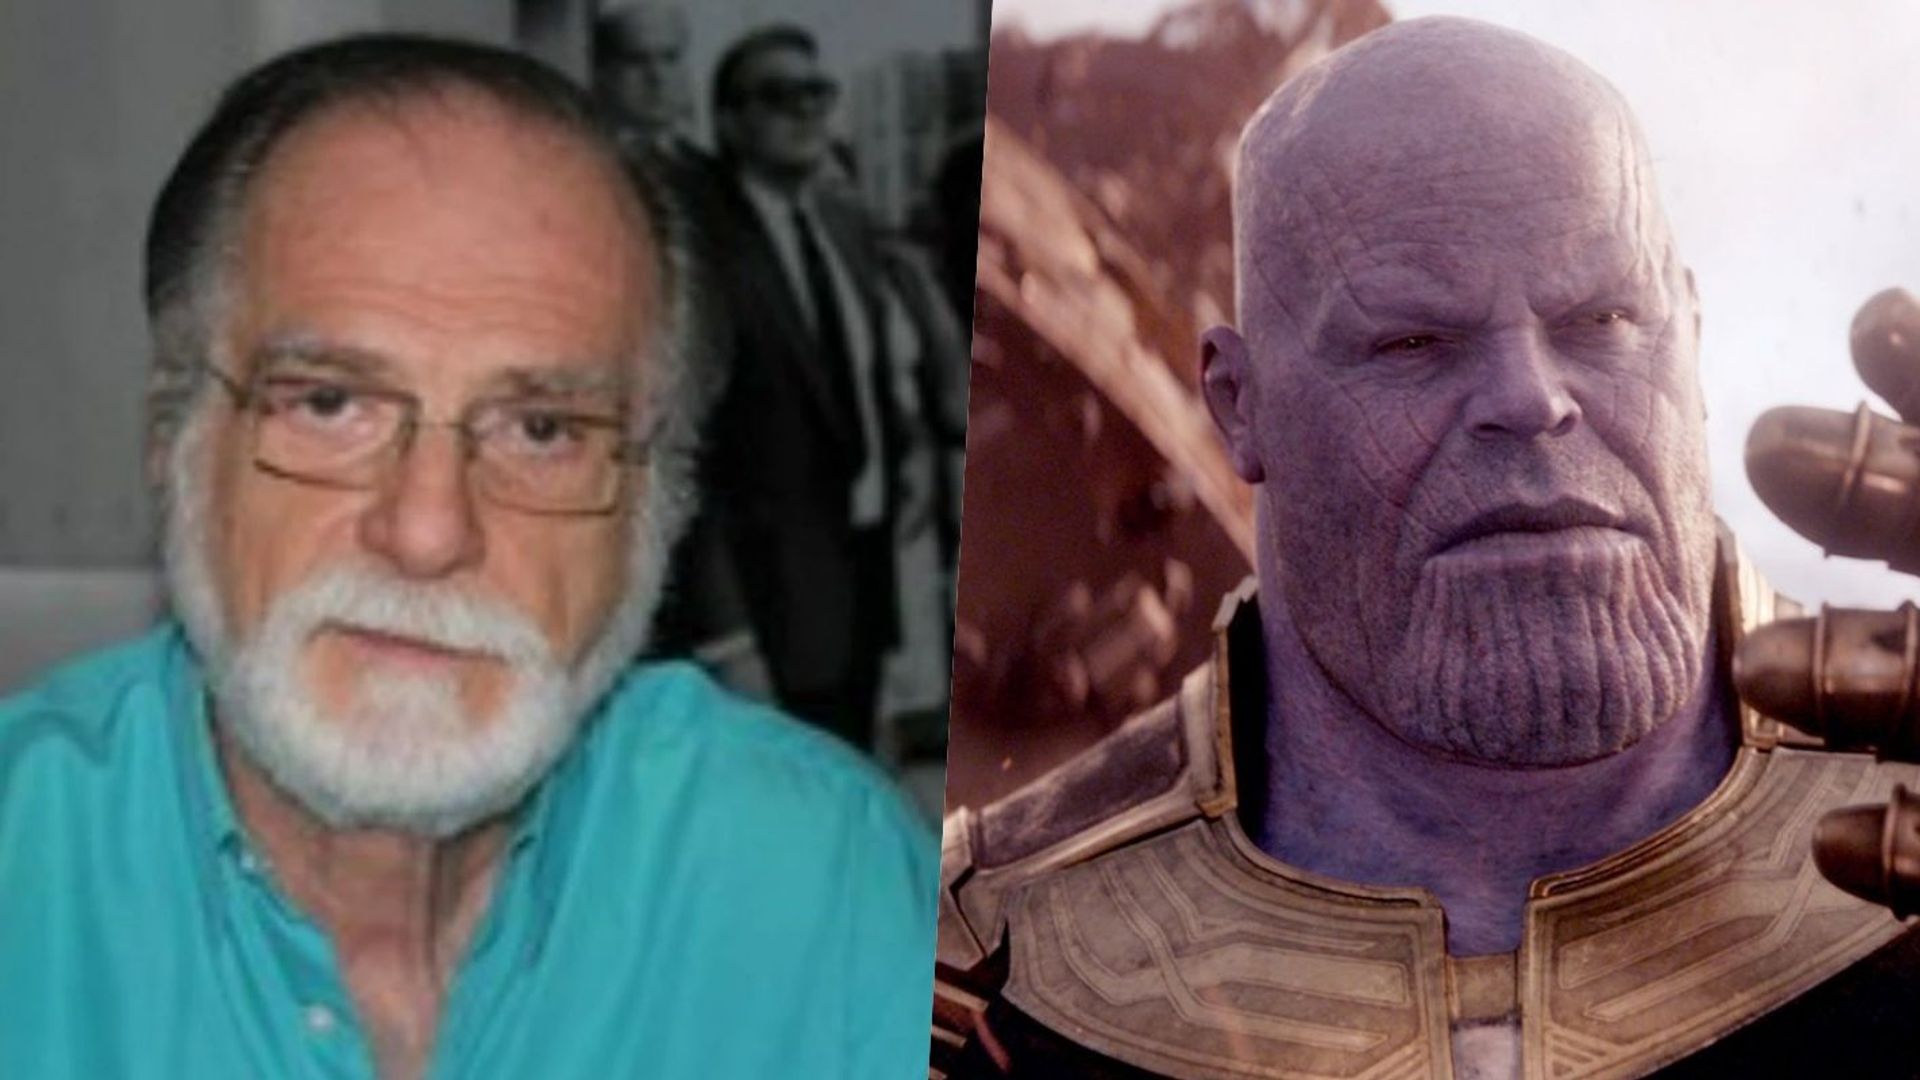 Leonardo José, voz de Charles Xavier e Thanos, morre aos 78 anos